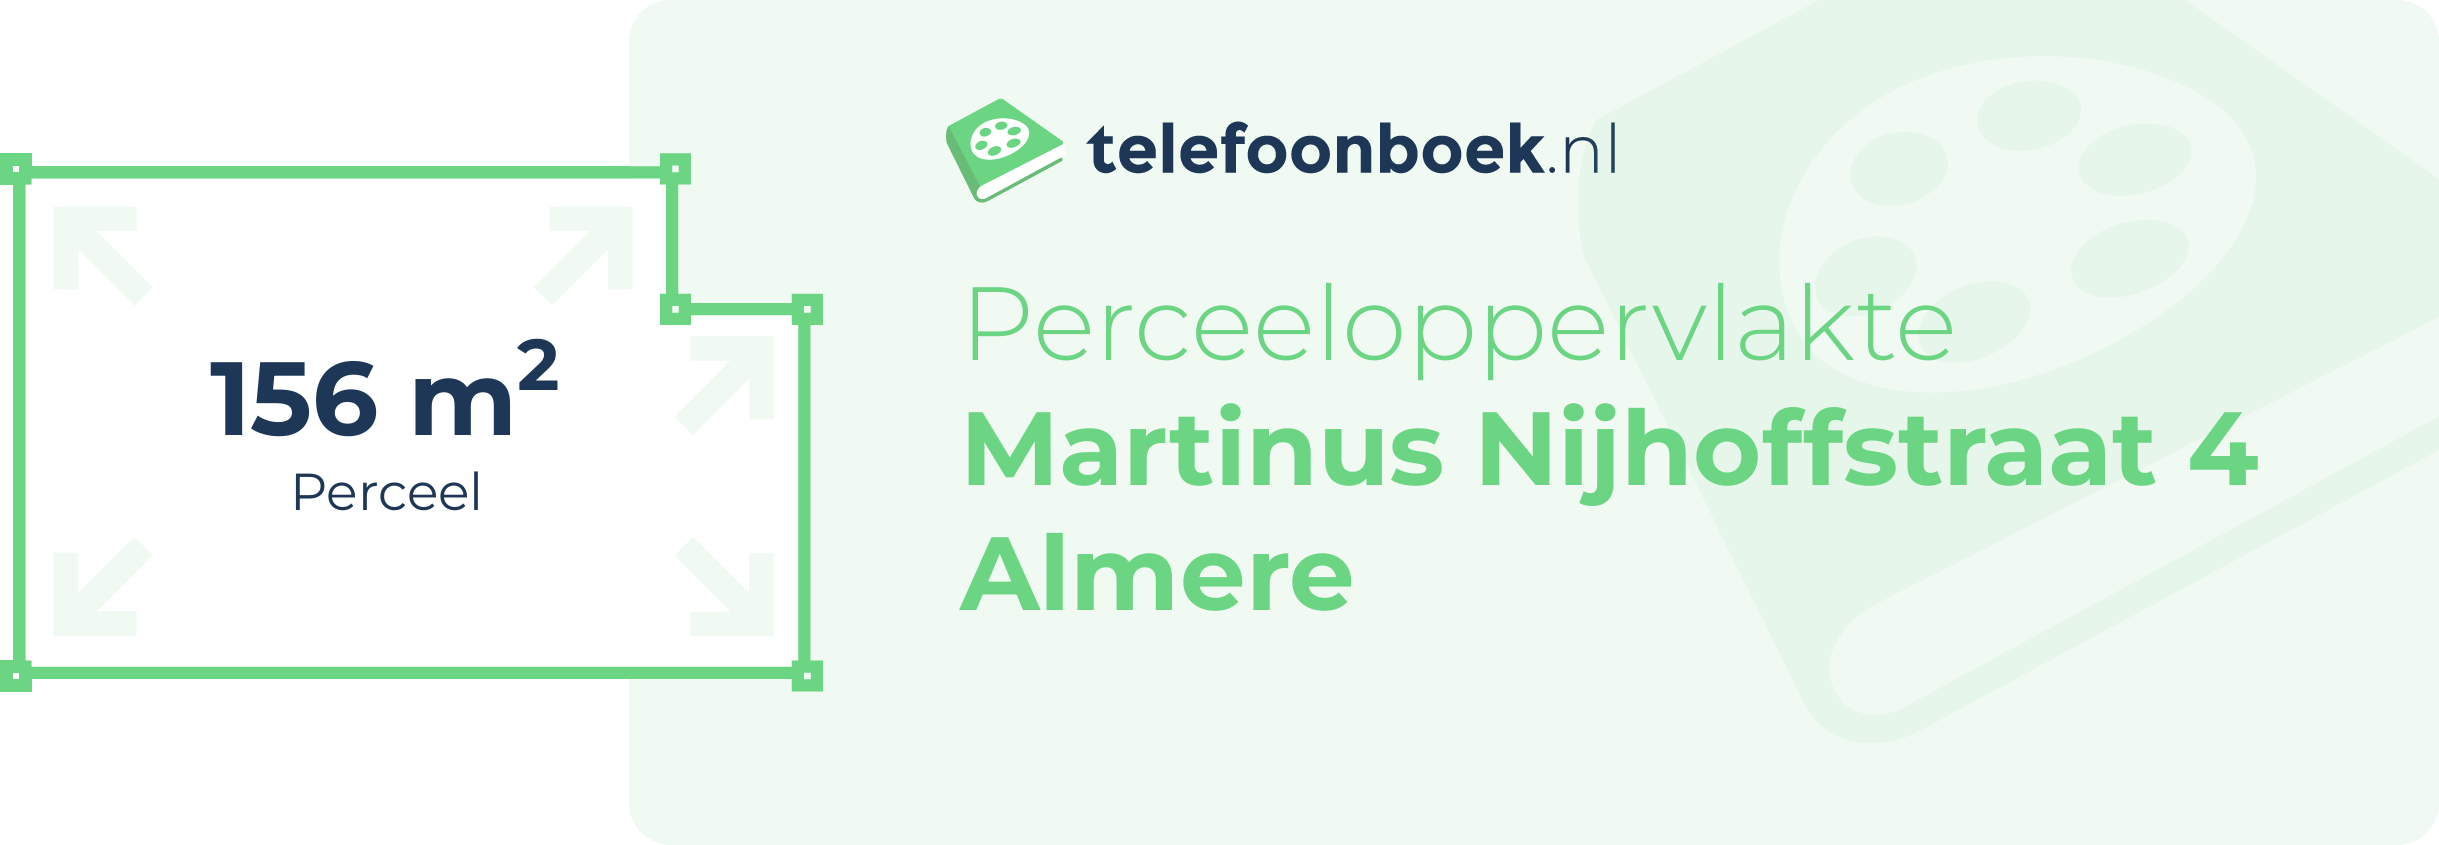 Perceeloppervlakte Martinus Nijhoffstraat 4 Almere